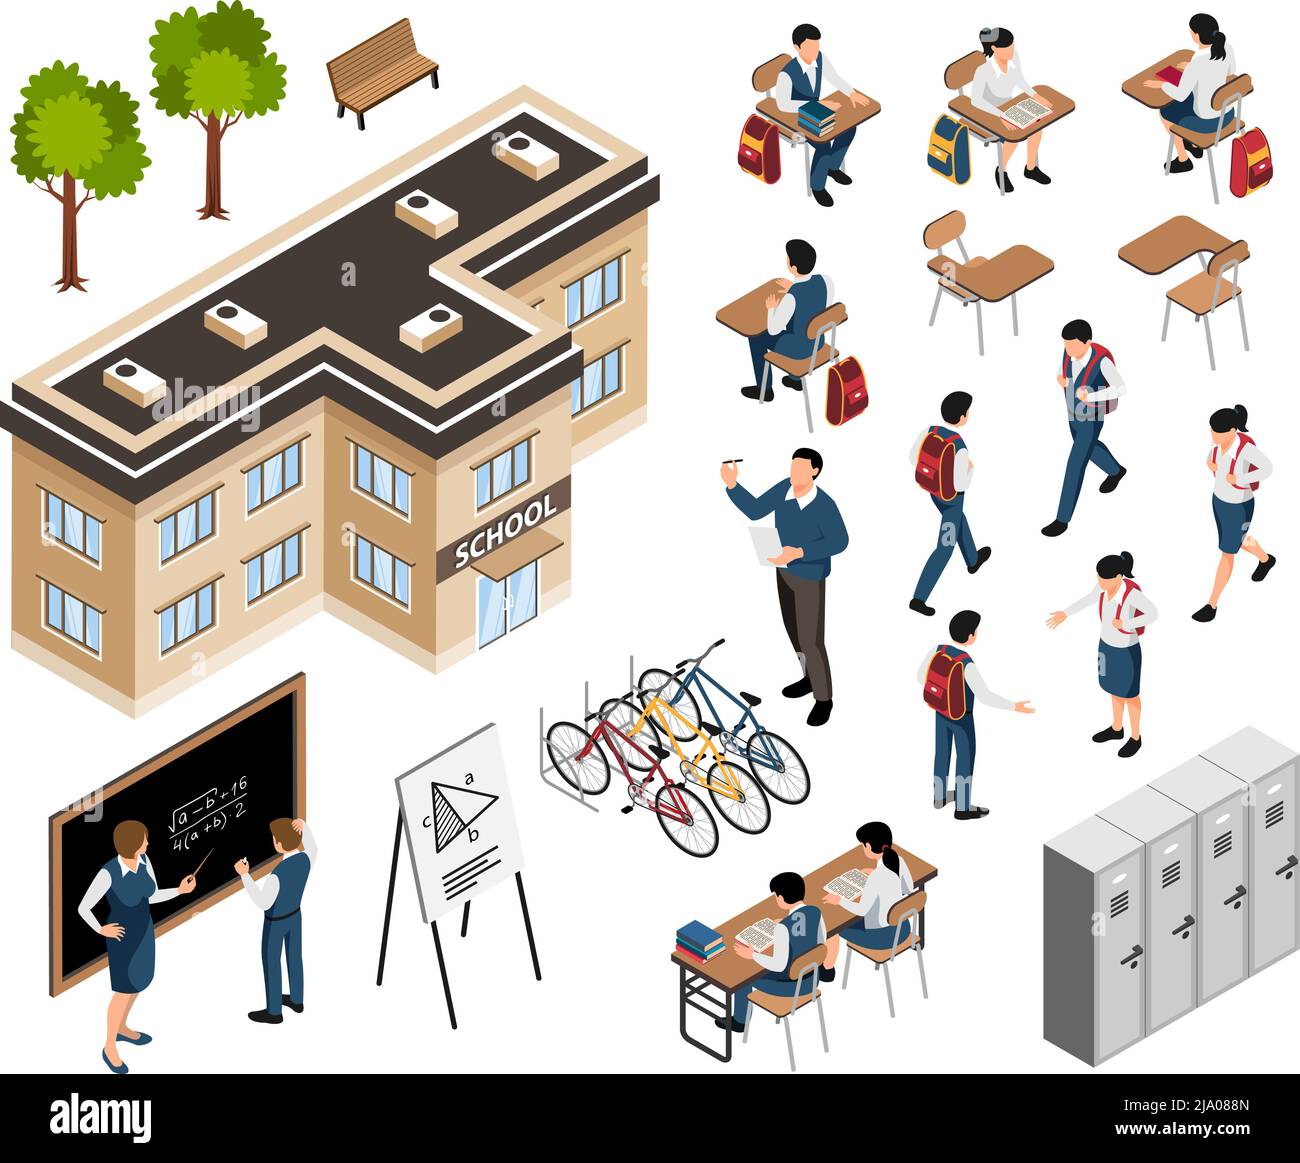 Ensemble de bâtiments scolaires isométriques avec des icônes isolées de bureaux et de casiers avec des élèves et des personnages d'enseignant illustration vectorielle Illustration de Vecteur